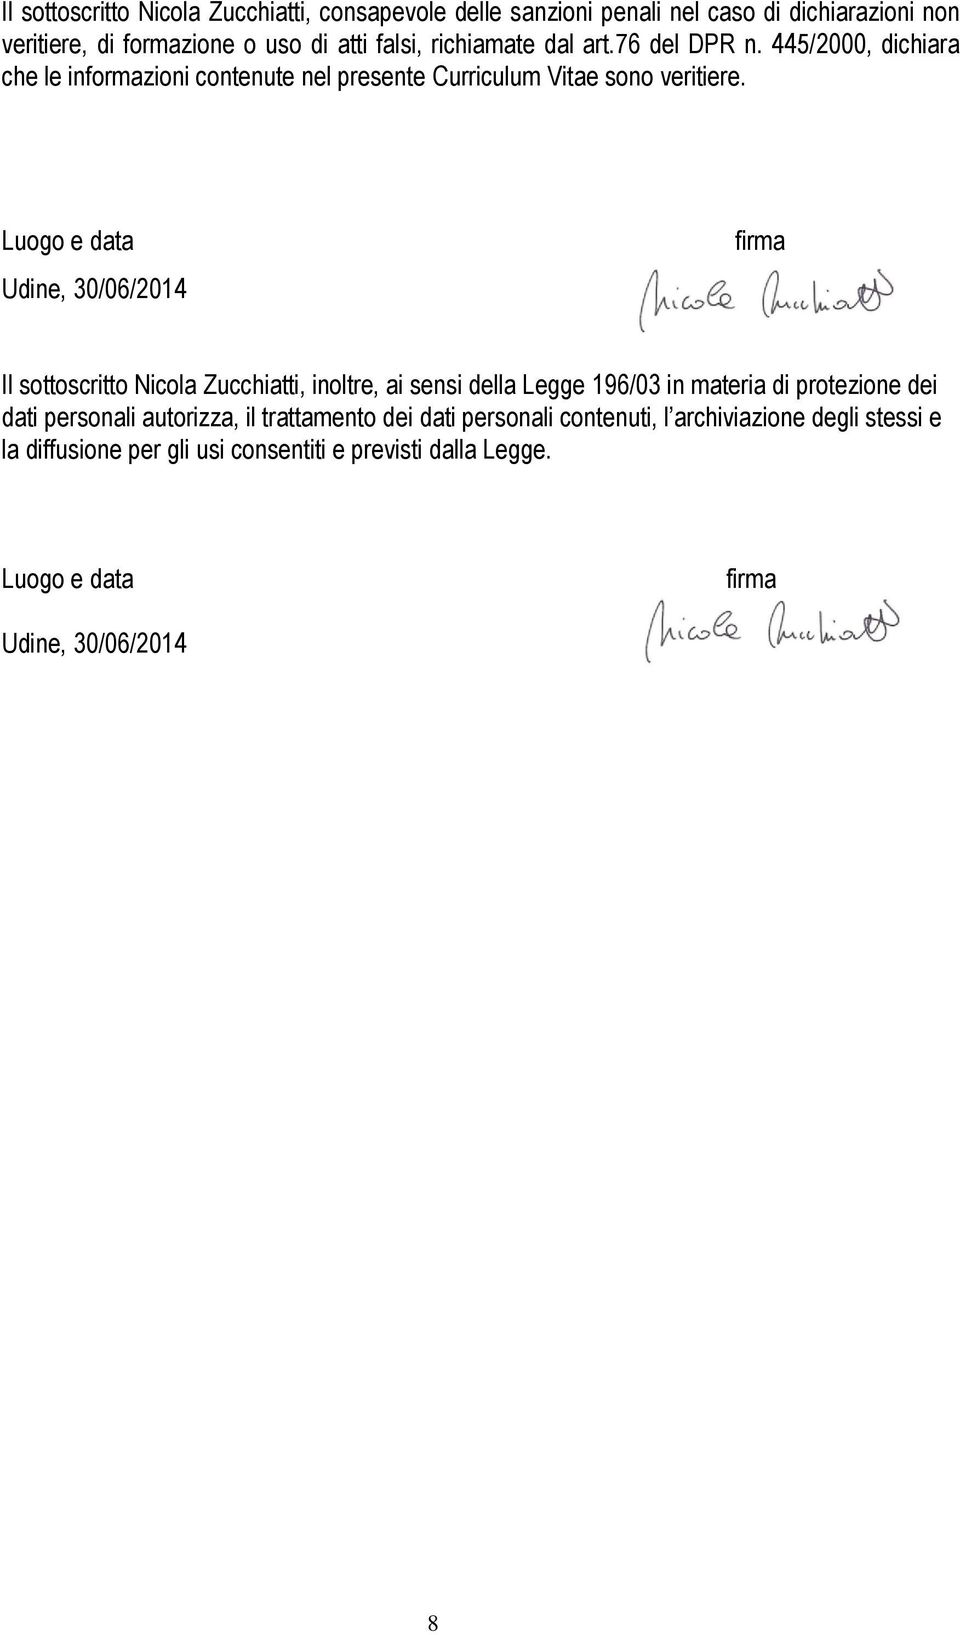 Luogo e data Udine, 30/06/2014 firma Il sottoscritto Nicola Zucchiatti, inoltre, ai sensi della Legge 196/03 in materia di protezione dei dati personali